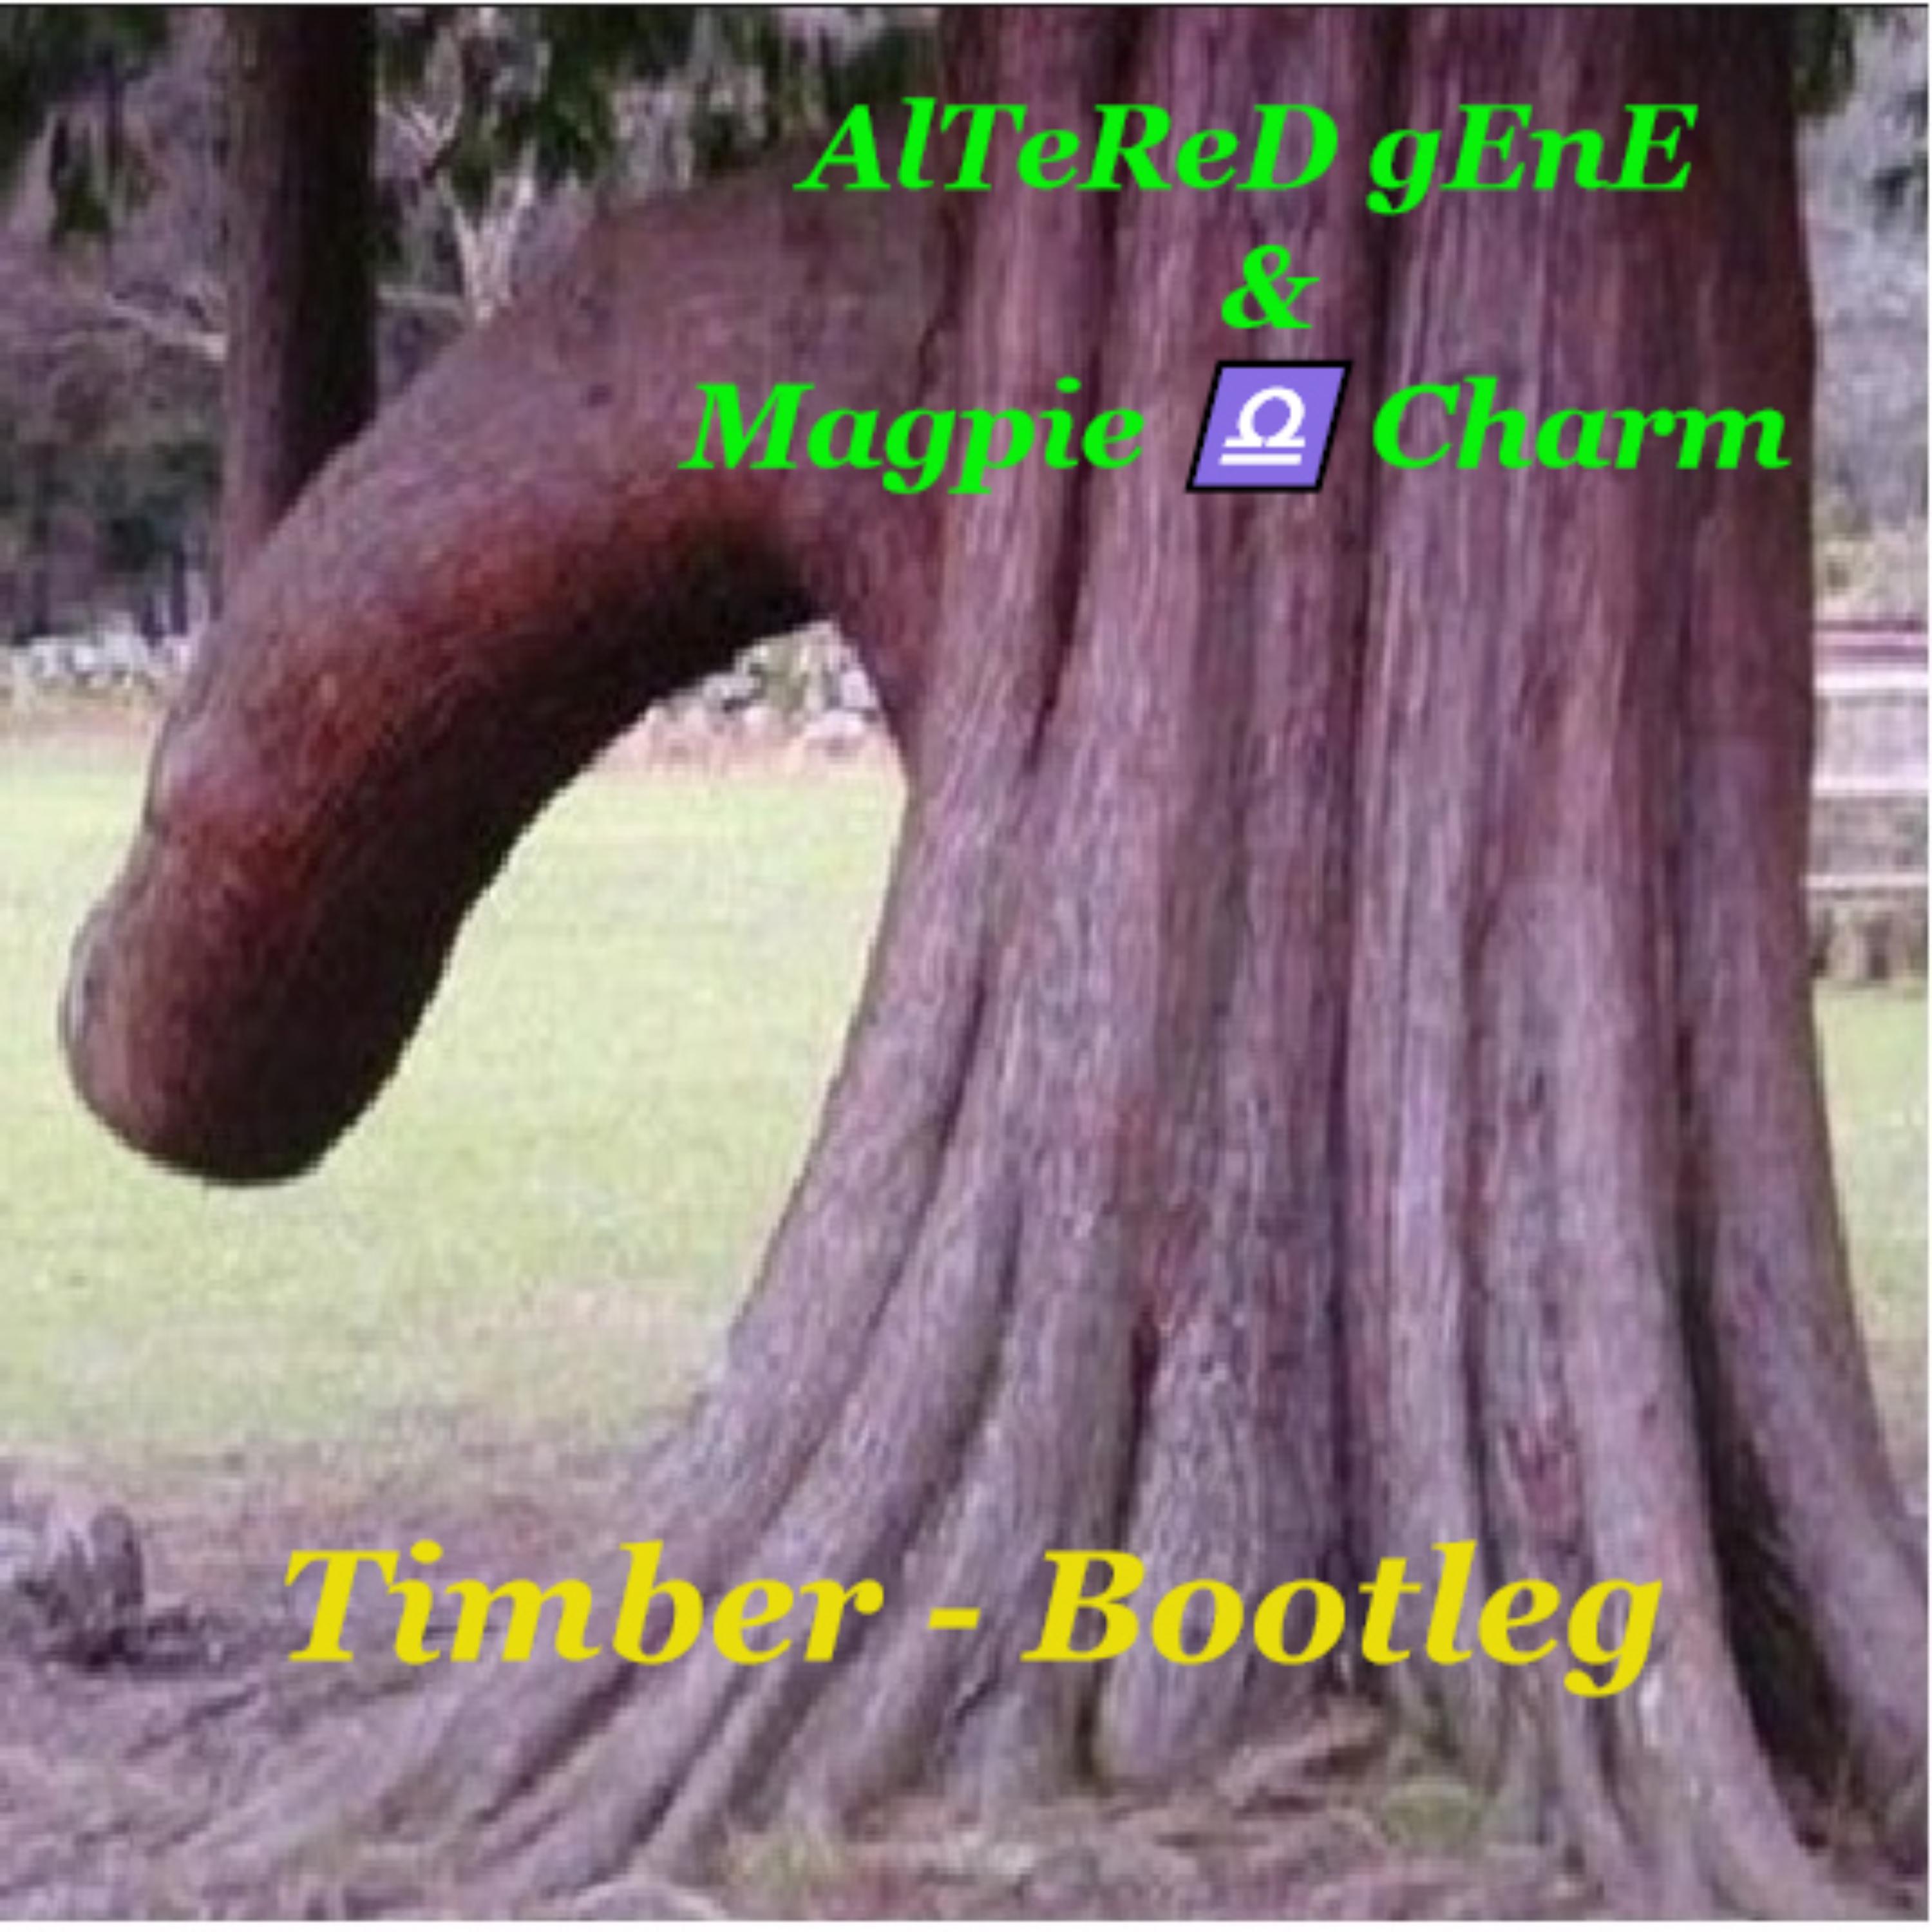 Timber - Bootleg